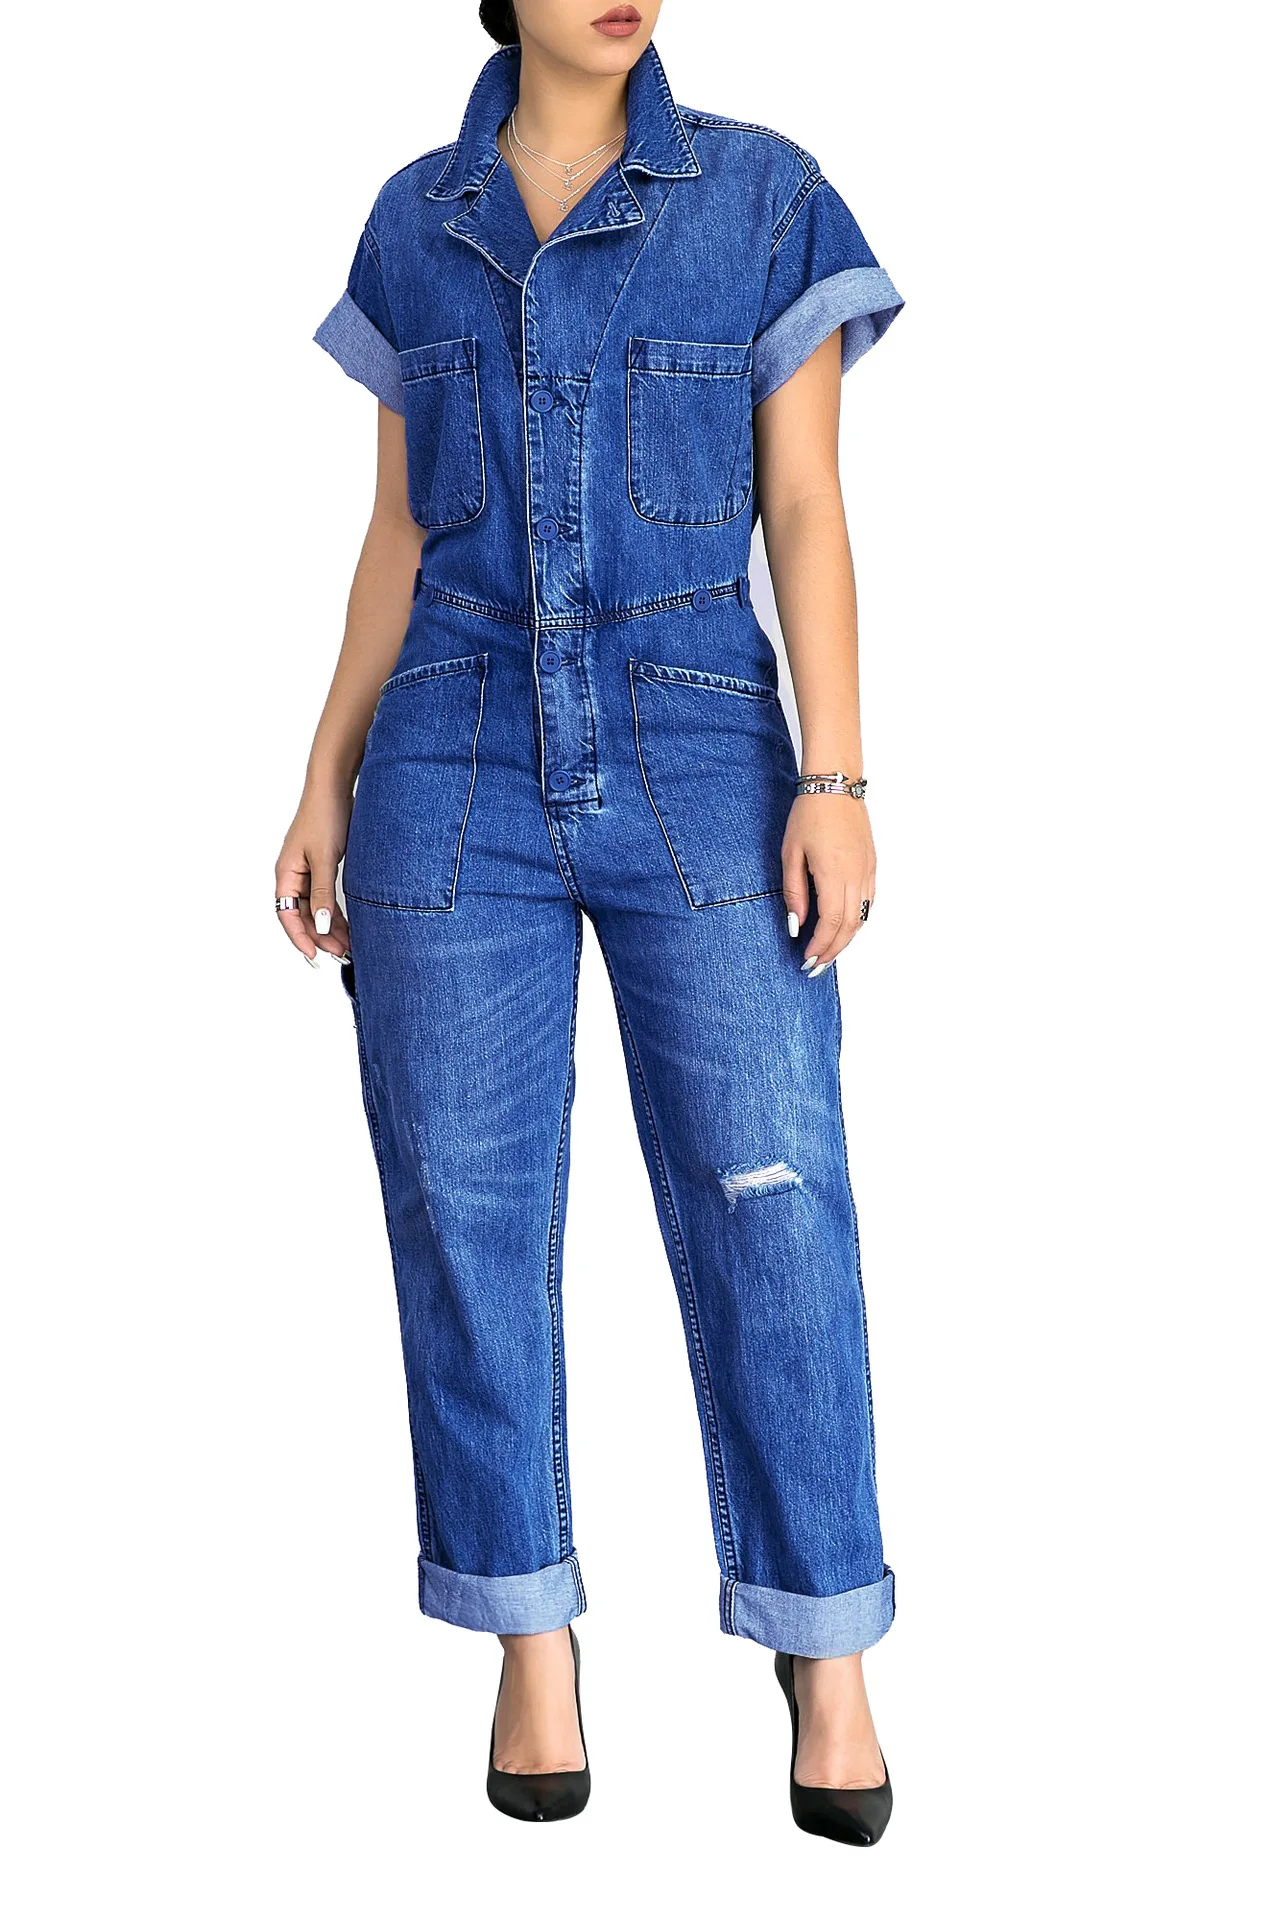 8788 Women Short Jeans Jacket Plus Size Denim Jumpsuit - Buy Denim ...